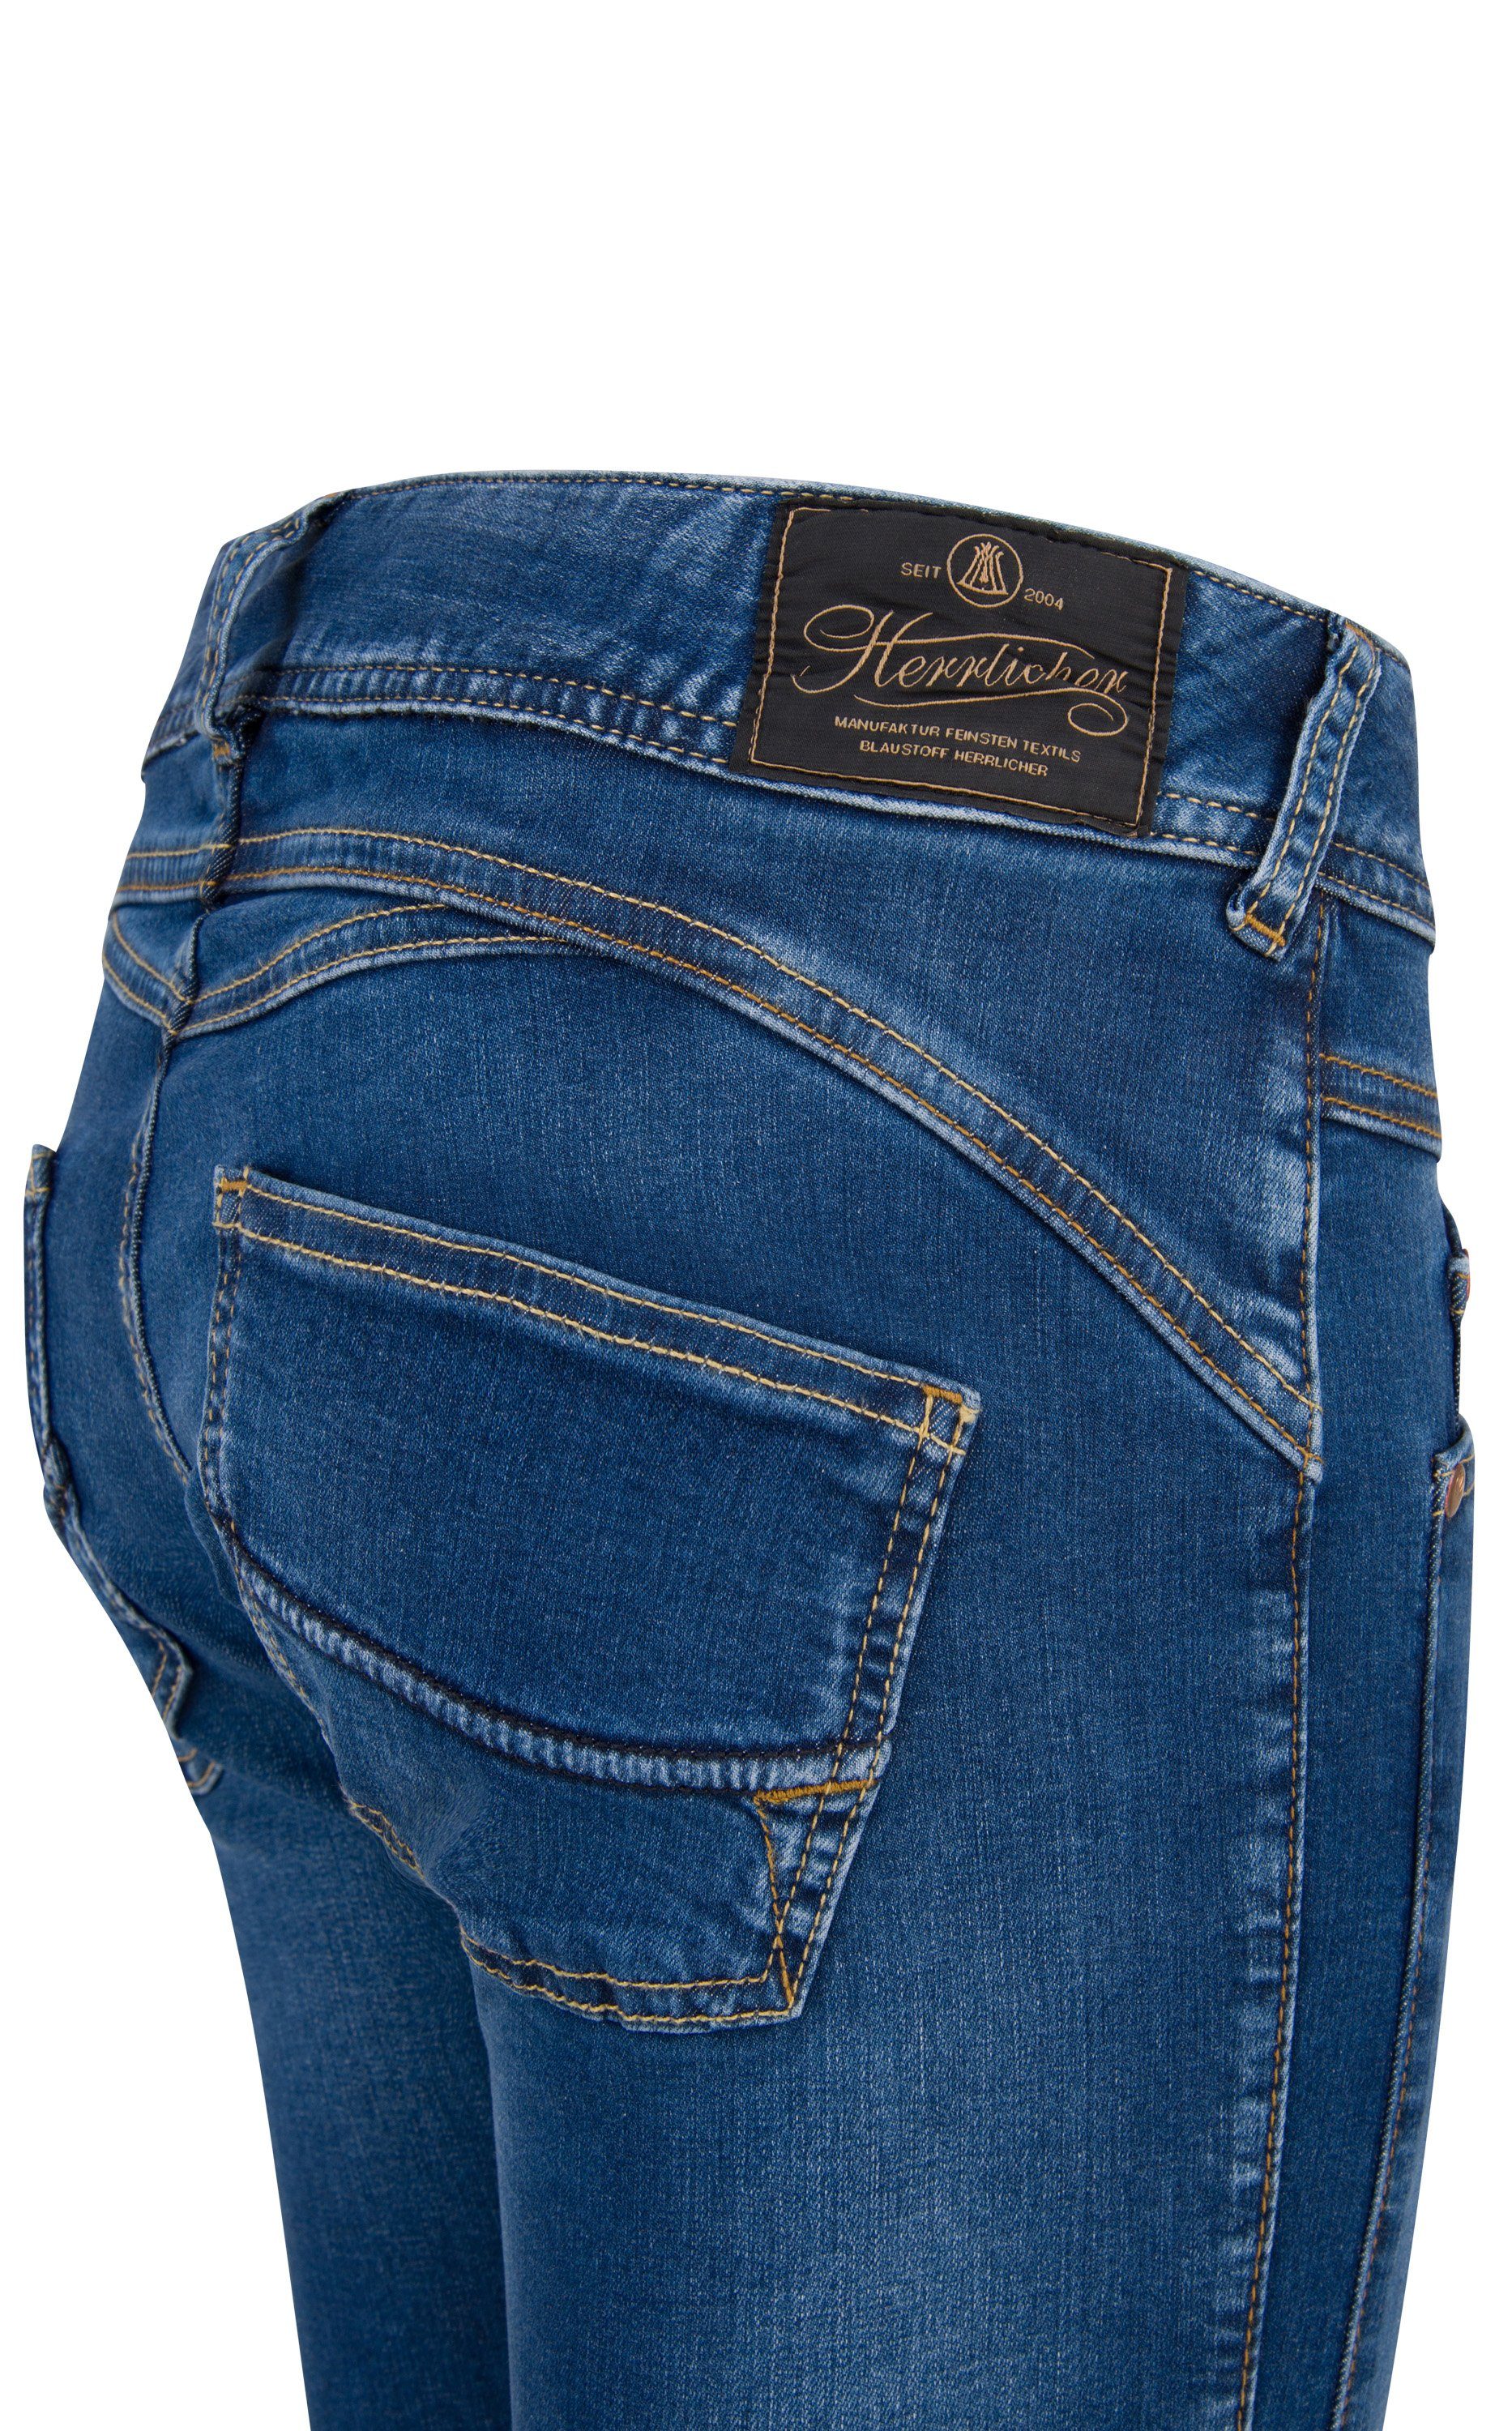 HERRLICHER Stretch-Jeans Powerstretch dazzling Denim Herrlicher Slim blue GILA 5606-D9668-663